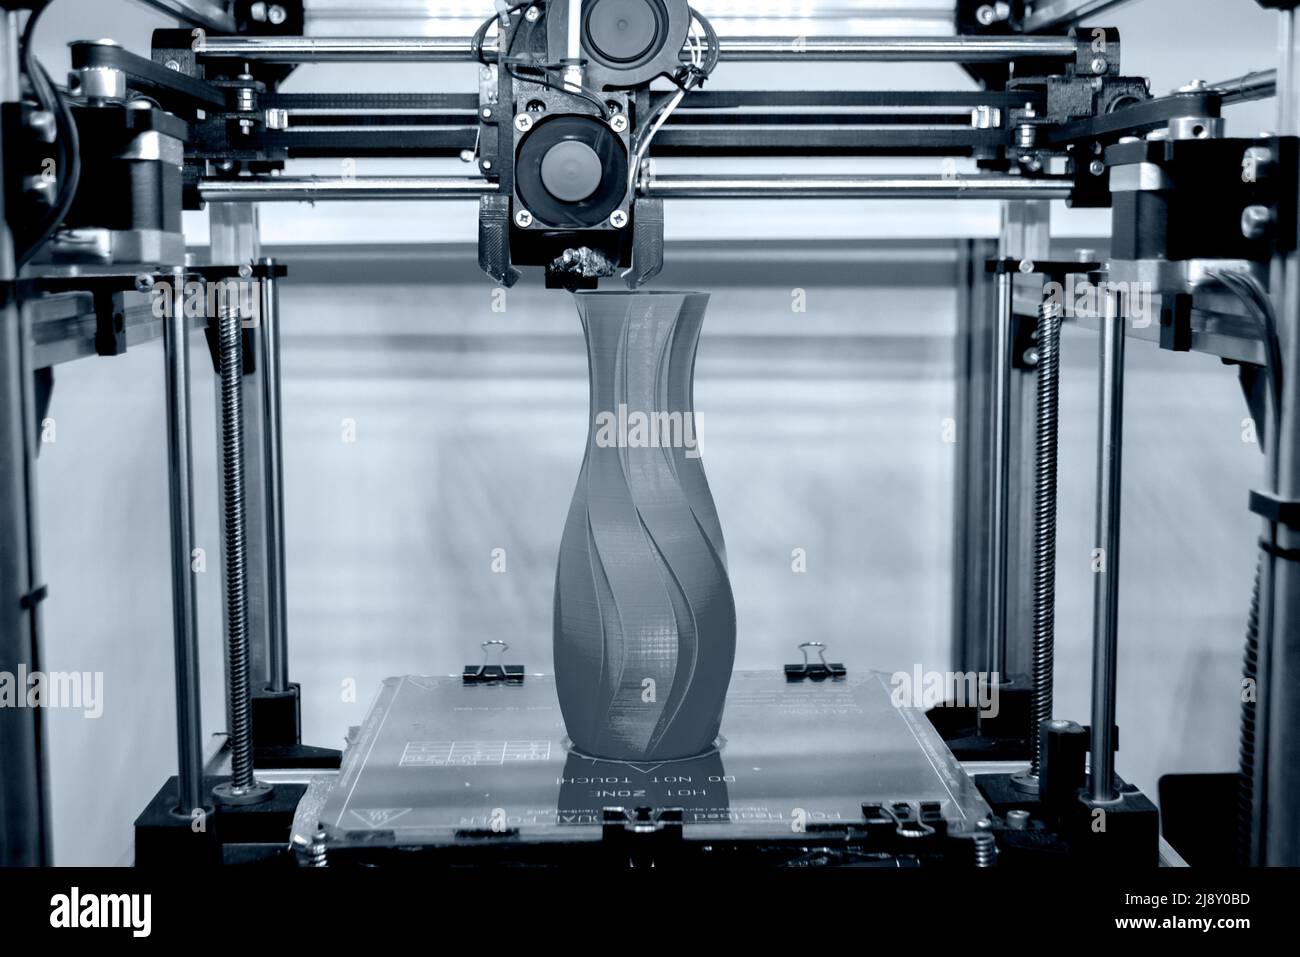 Elaborare il modello di stampa sulla stampante 3D. Computer con stampante digitale ad alta tecnologia in azione. Meccanismo di stampa aggiunta di livelli all'oggetto. Stampante FDM 3D che lavora nel laboratorio di stampa 3D. 3D tecnologia moderna. Foto Stock